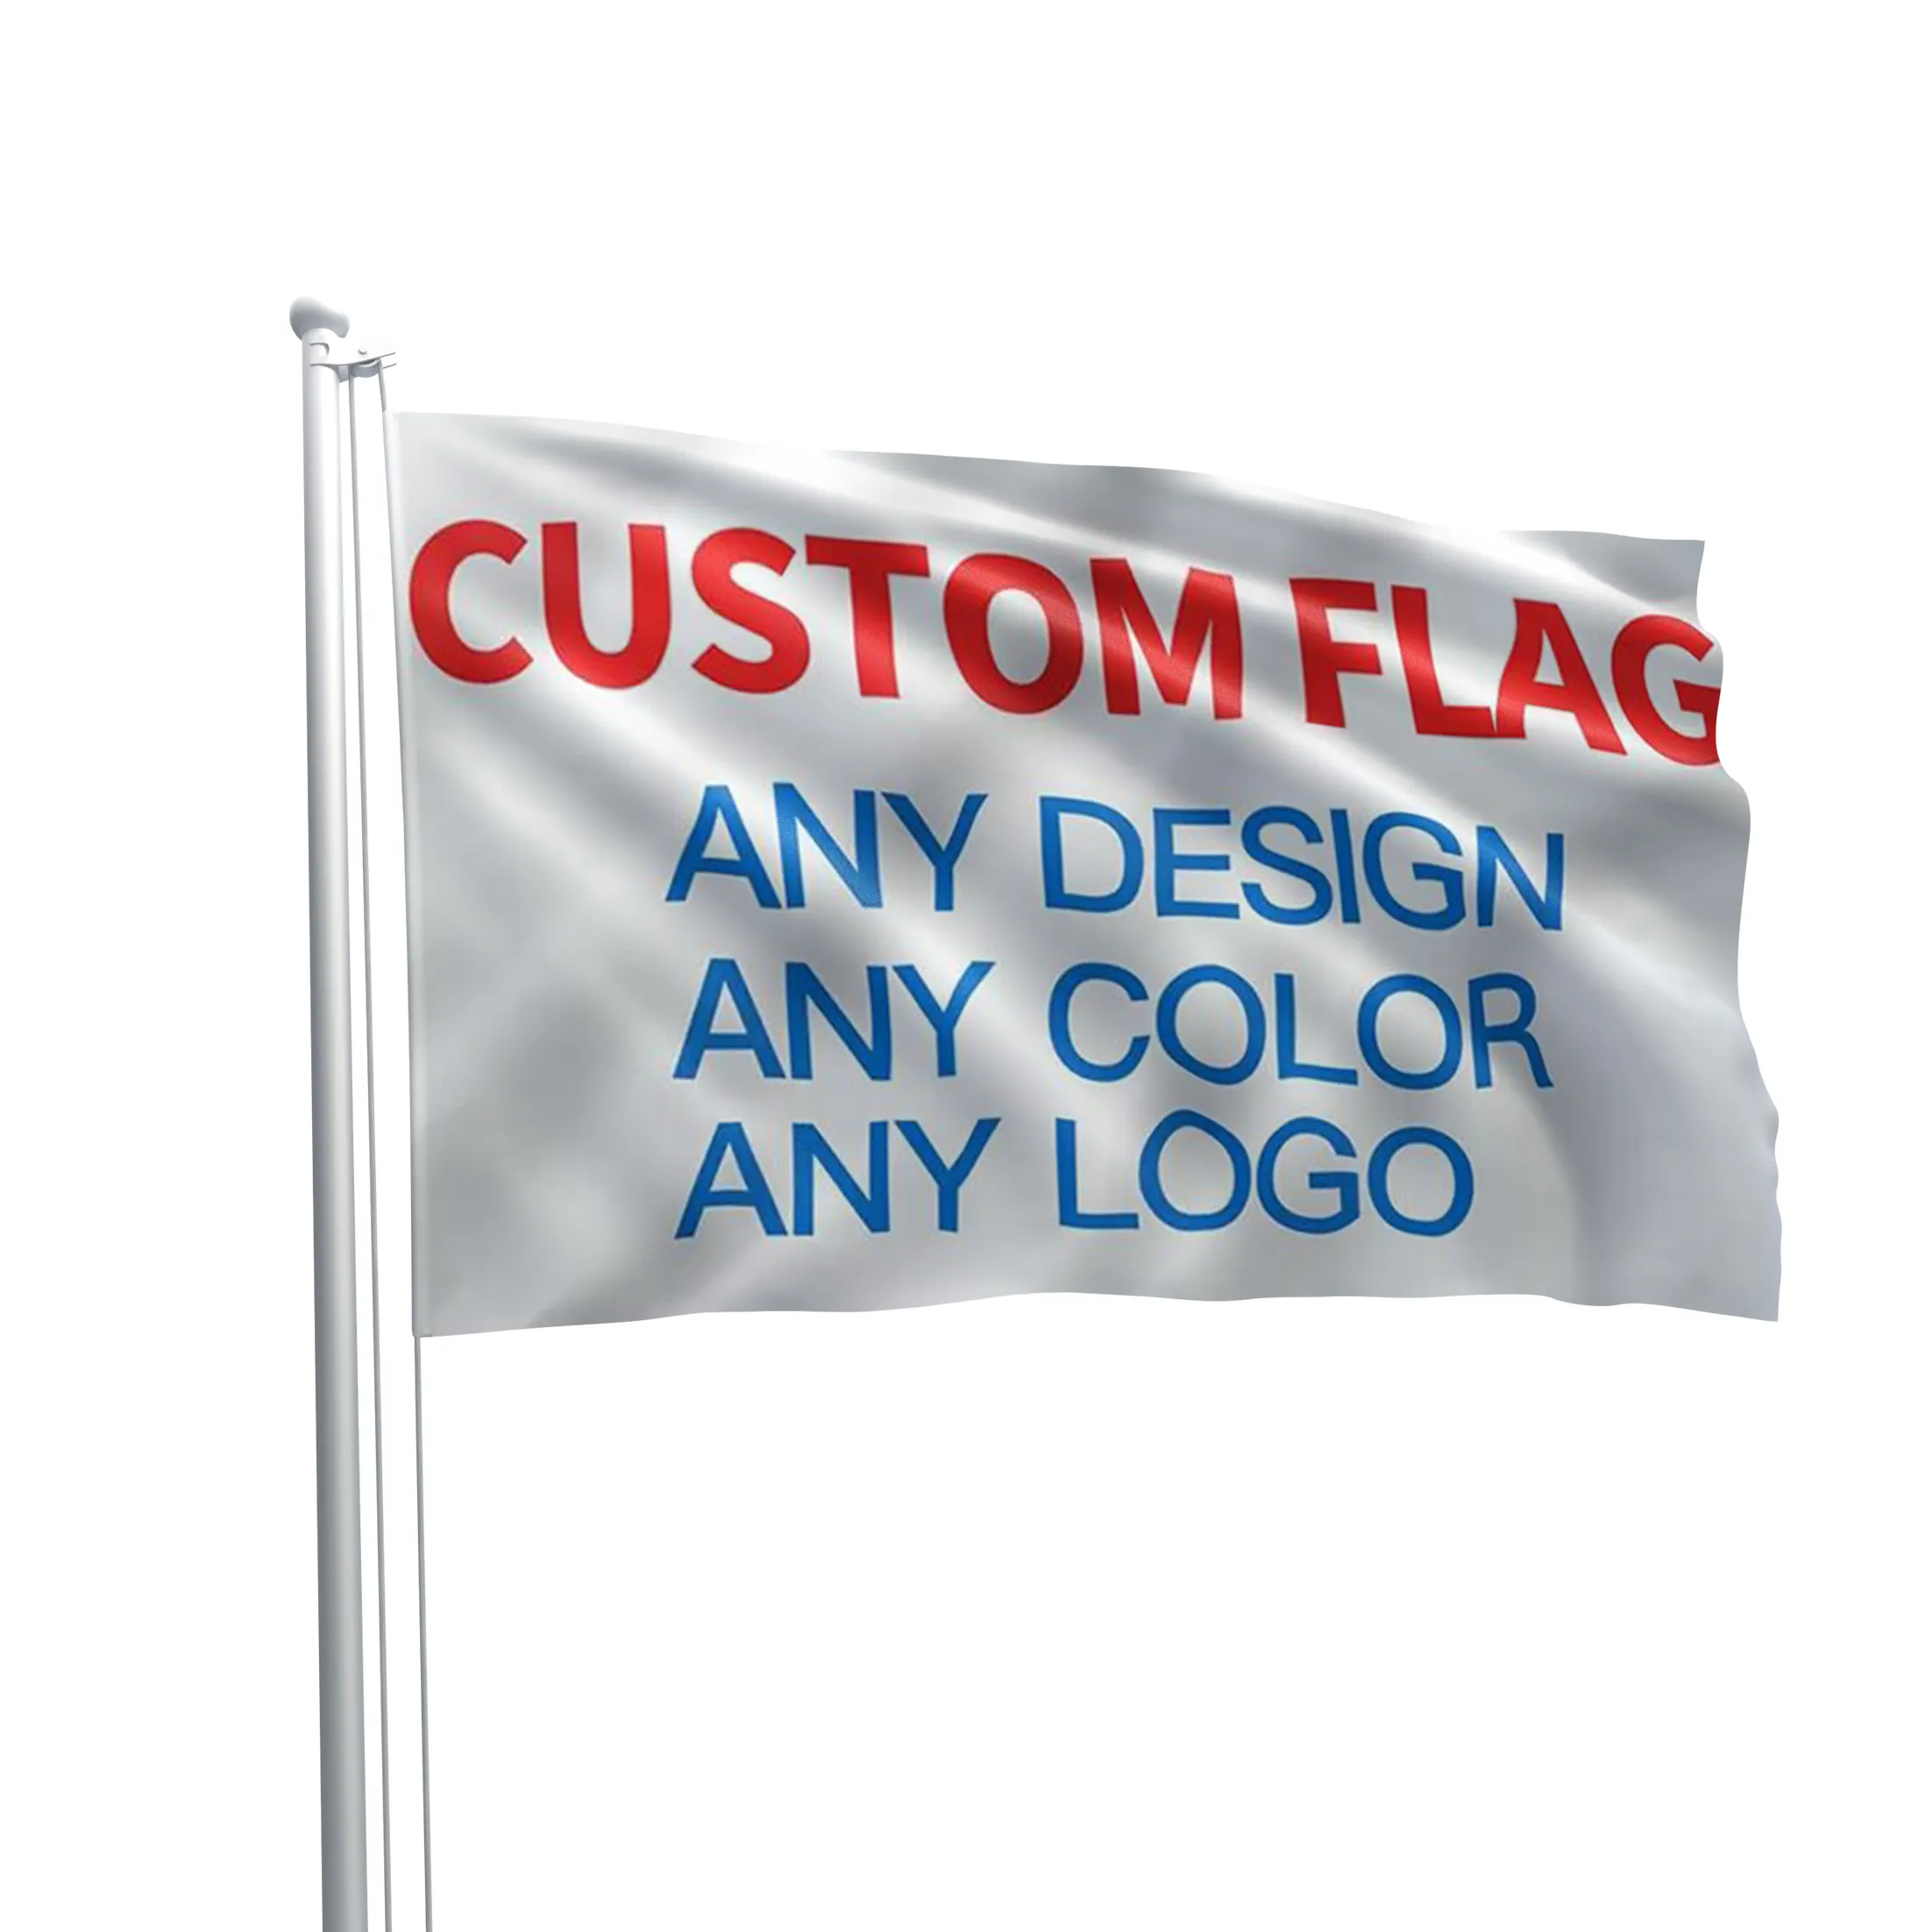 Personalice la impresión de su propio logotipo Diseño Palabras Texto Bandera personalizada 3x5 pies Banderas personalizadas Banners